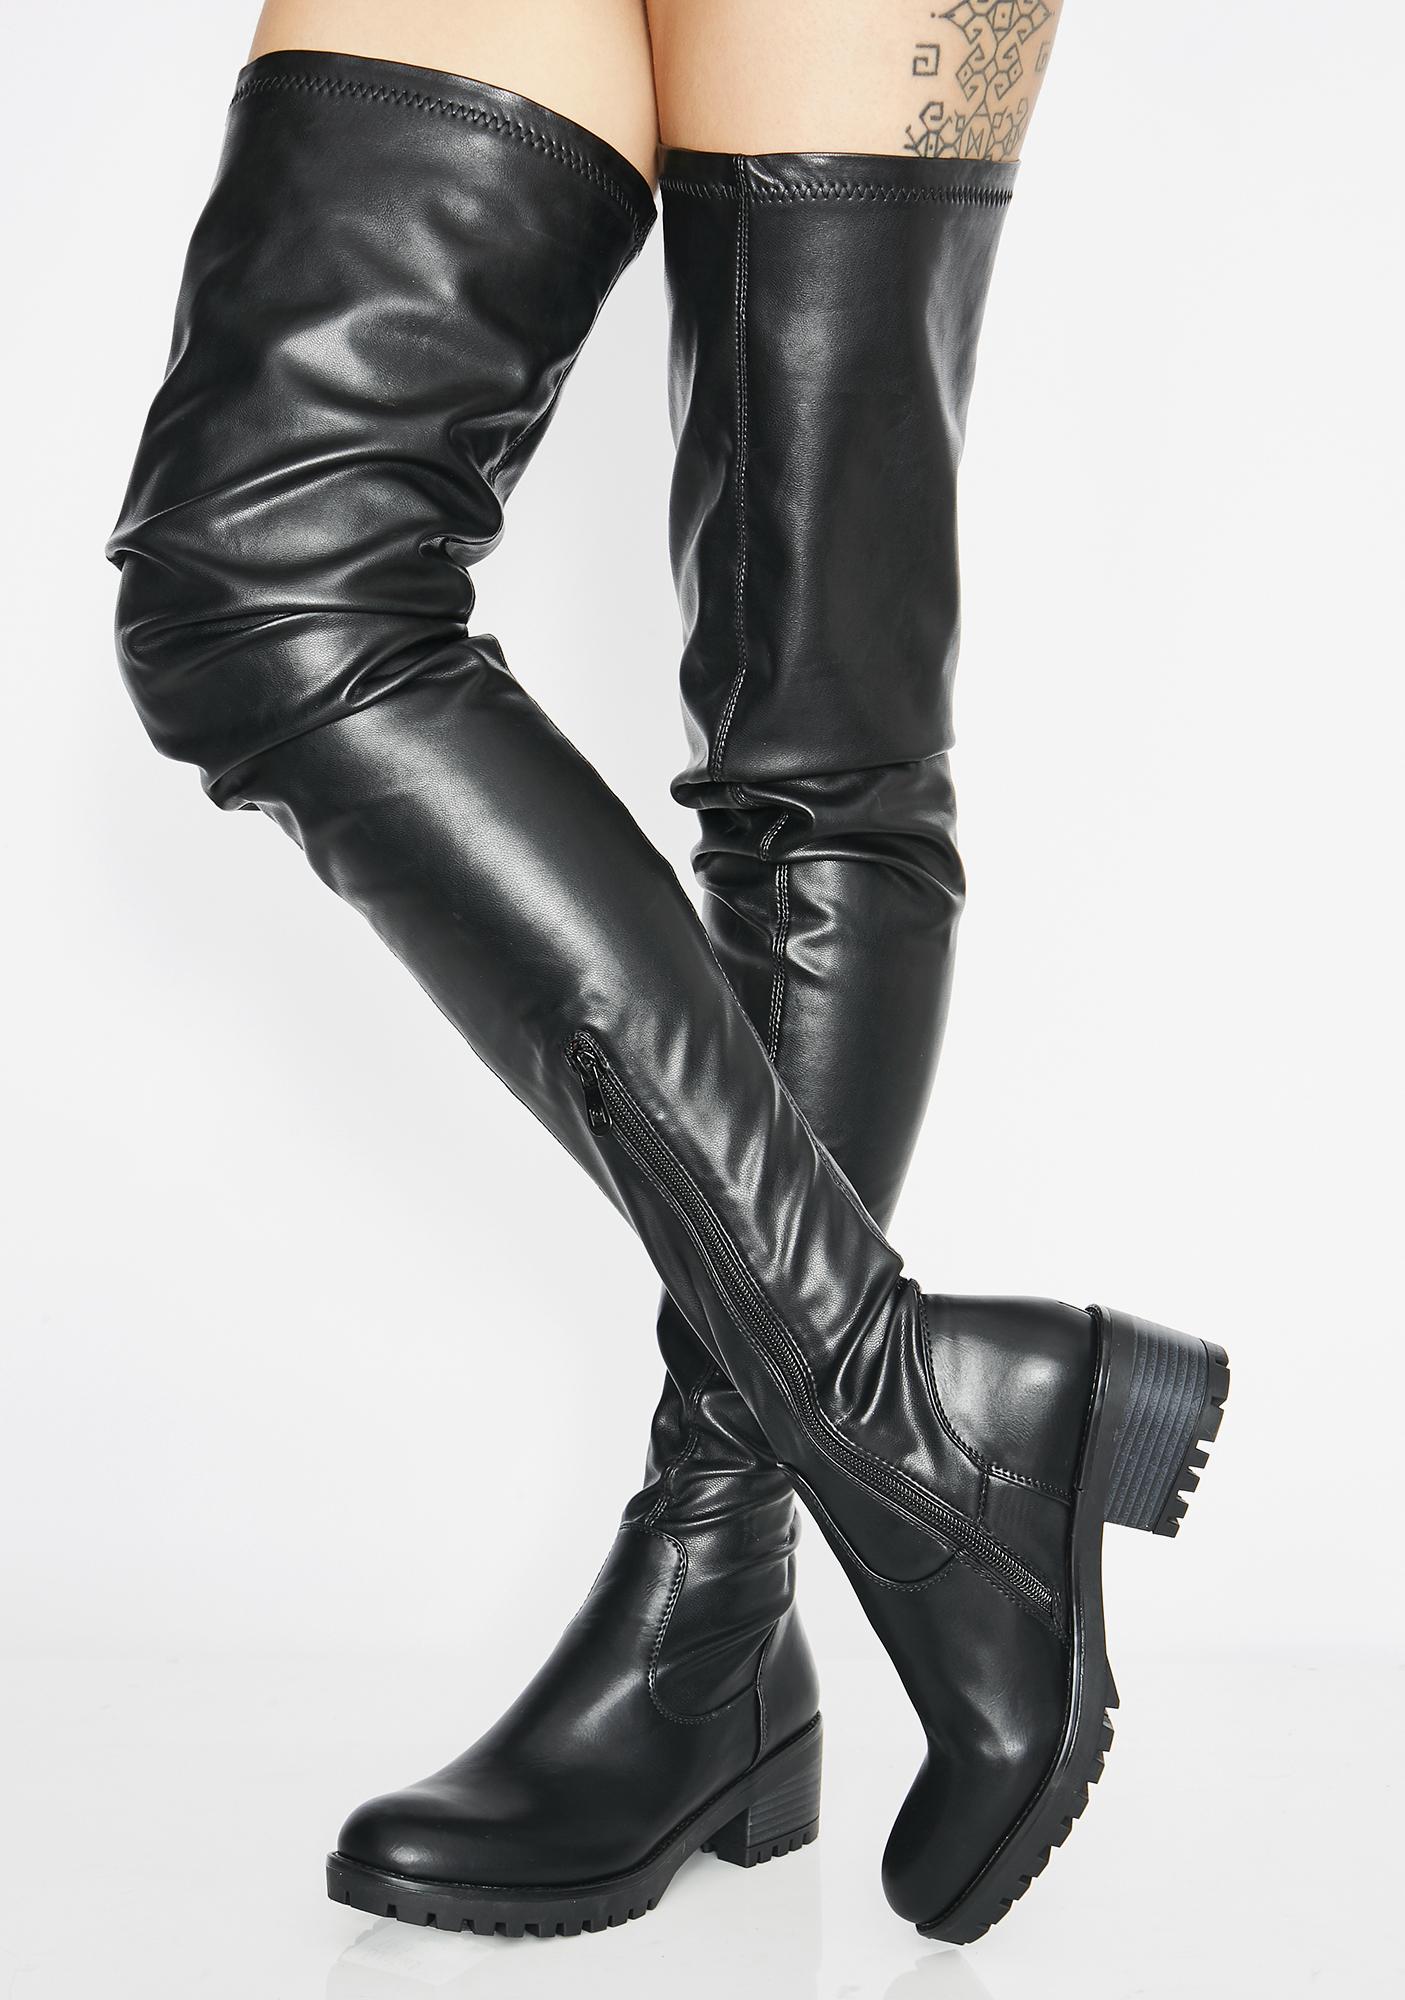 azalea wang thigh high boots